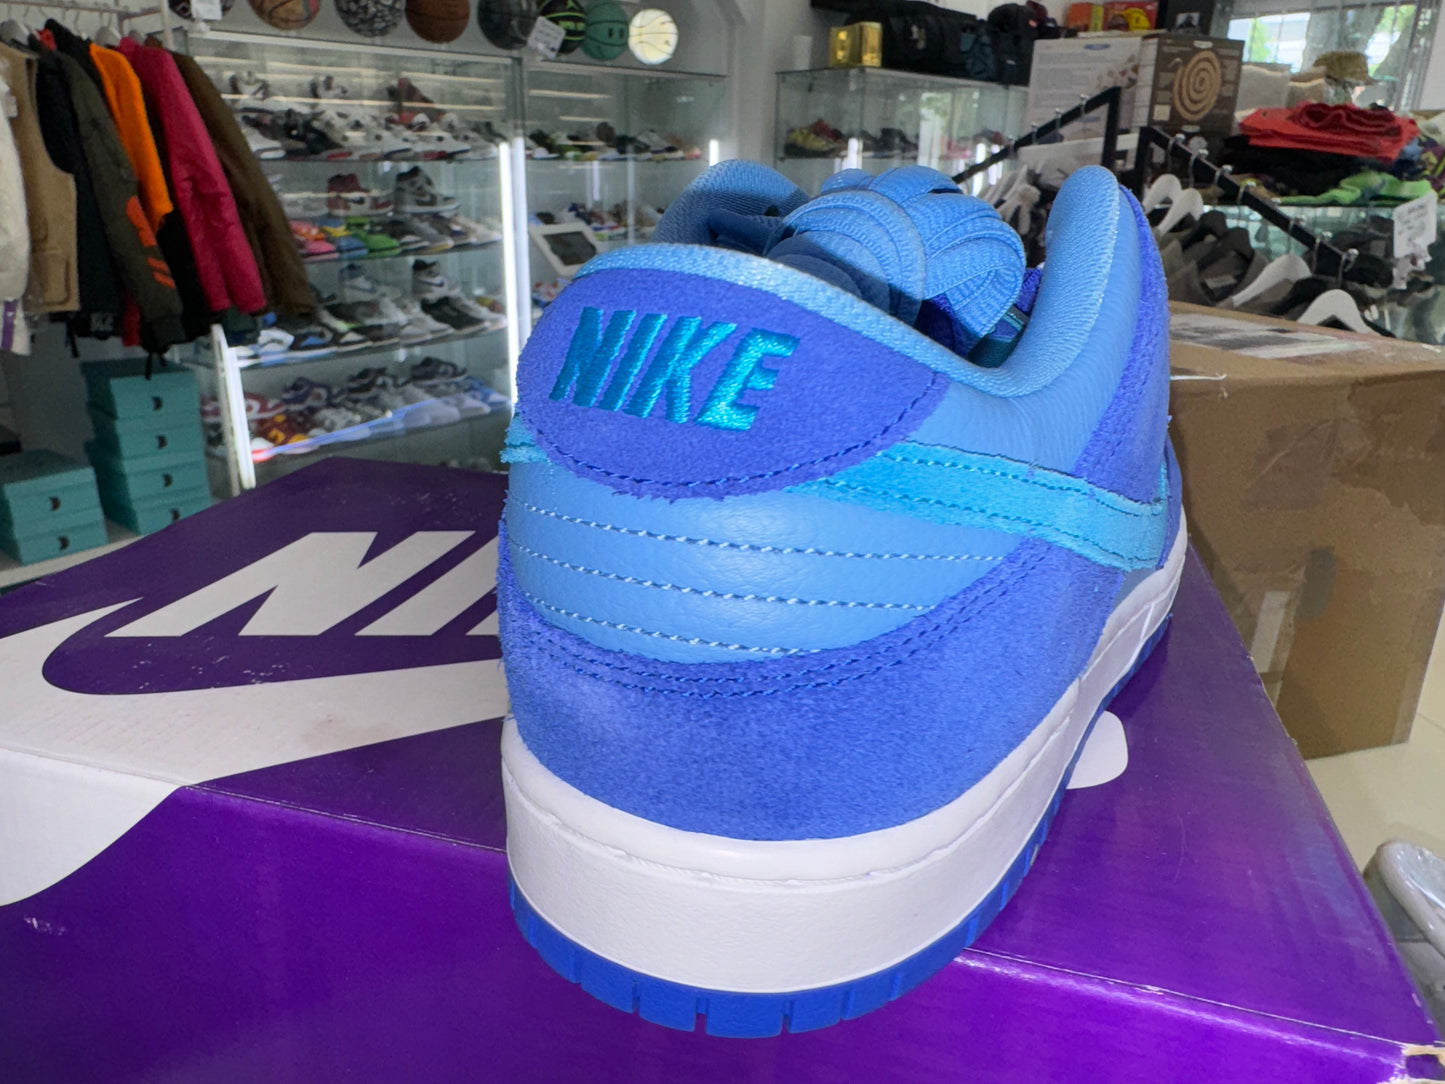 Nike Dunk SB Blue Raspberry